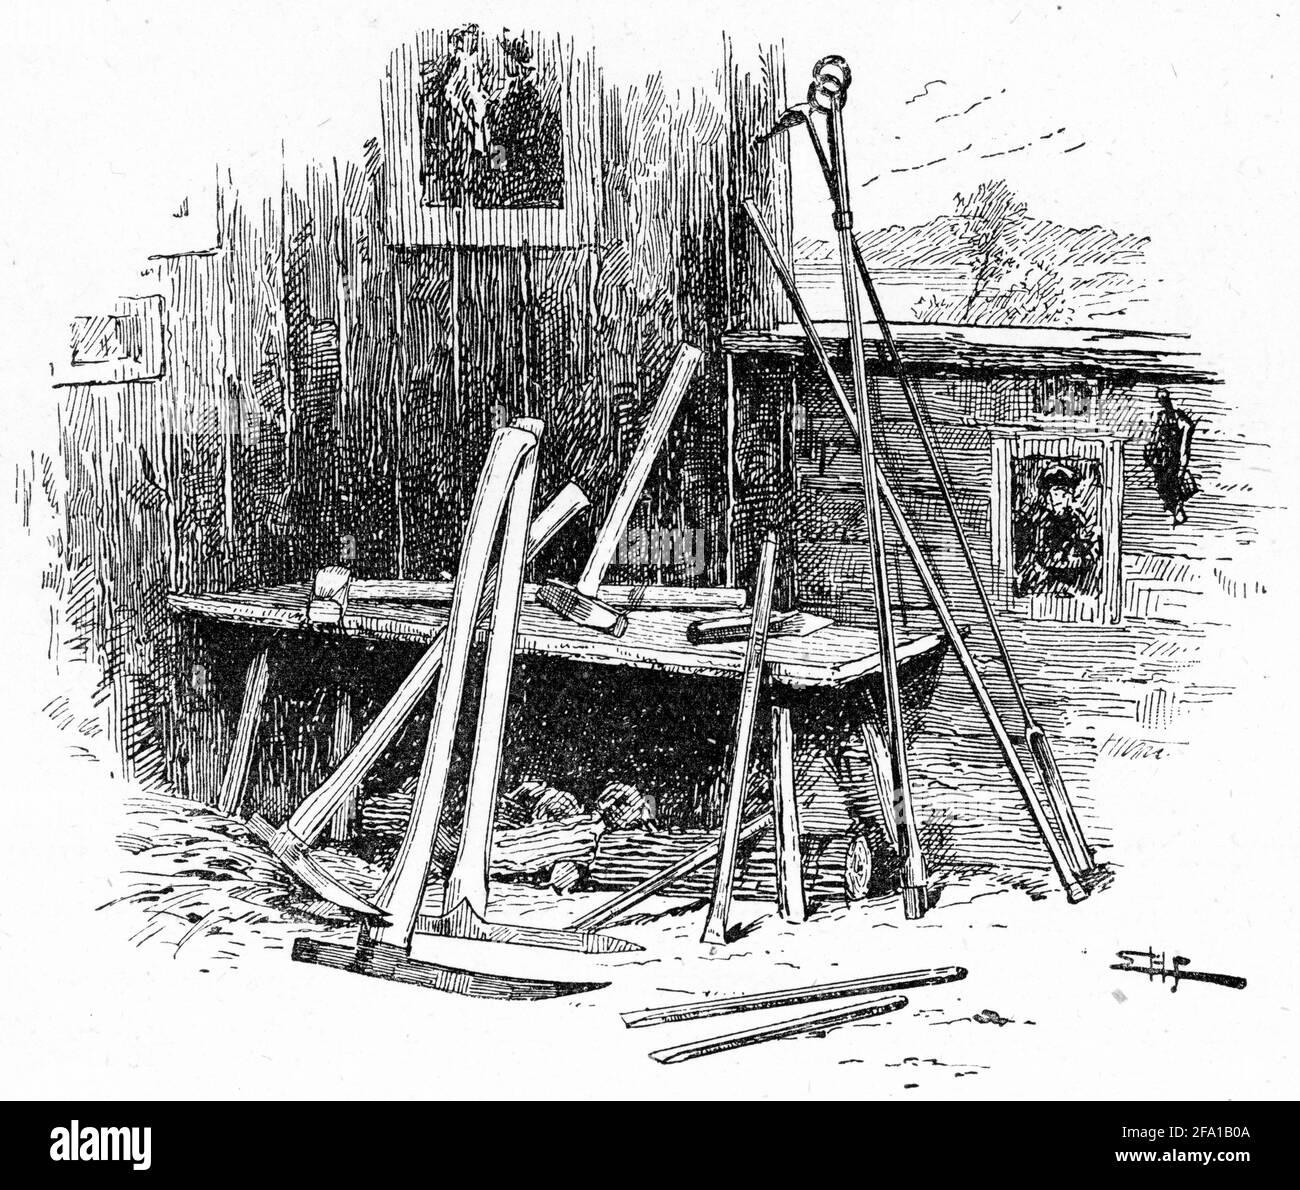 Gravure d'outils d'extraction de l'or, y compris des piqueurs, des marteaux traîneaux, des burins et des engins d'arpentage Banque D'Images